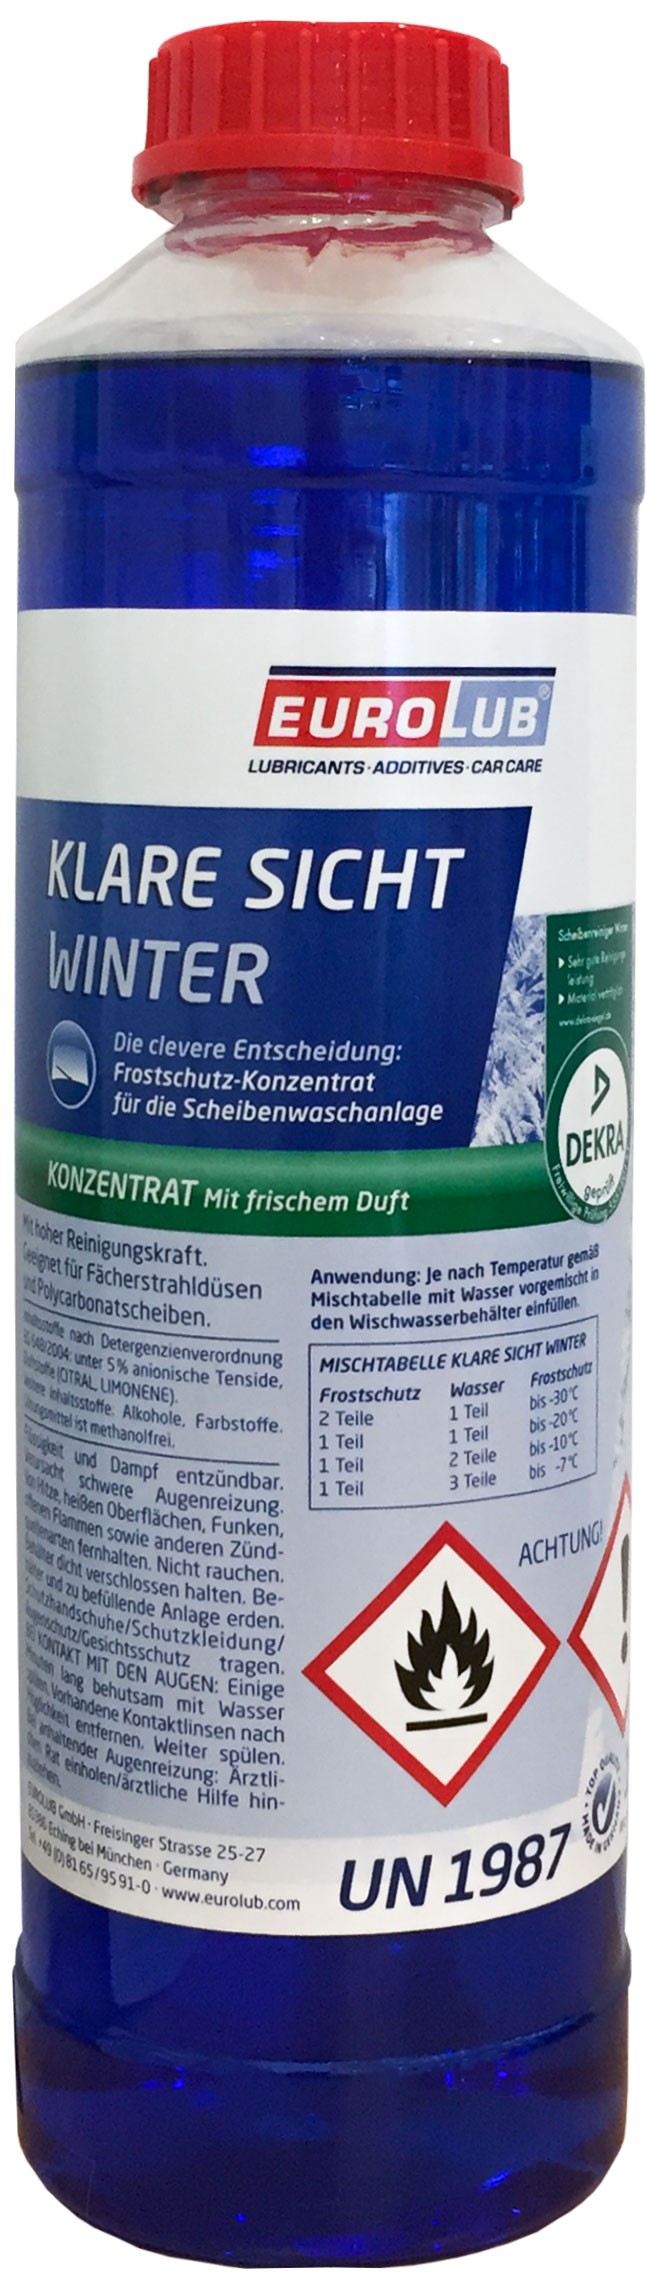 Eurolub Klare Sicht Winter Konzentrat / 1 Liter